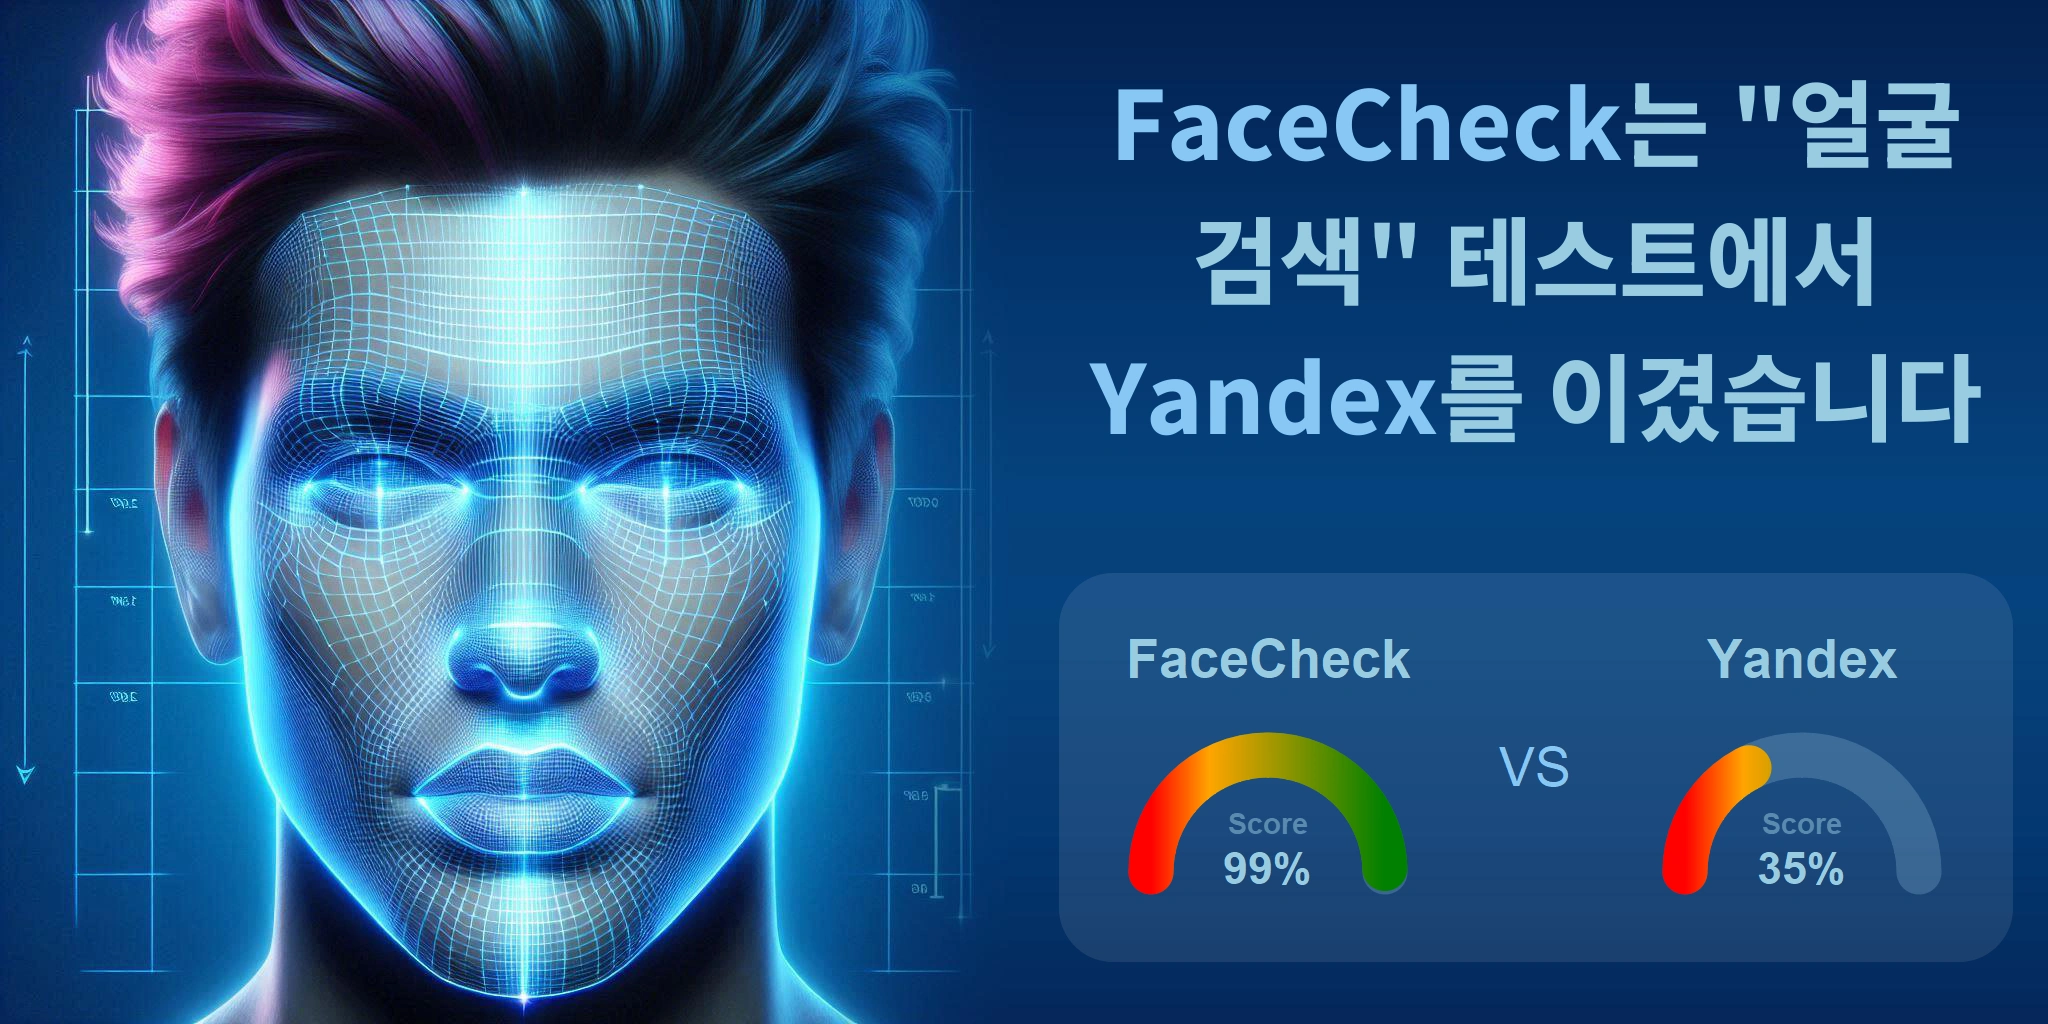 얼굴 검색에 더 좋은 것은 무엇입니까: <br>FaceCheck 또는 Yandex?